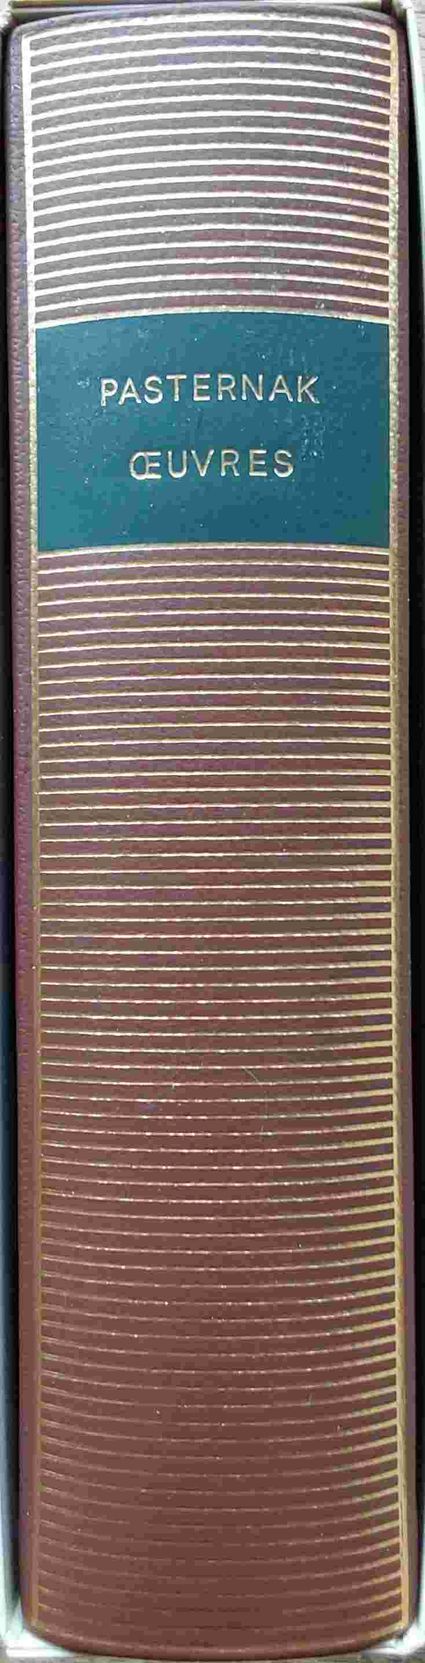 Volume 624 de Perec dans la Bibliothèque de la Pléiade.